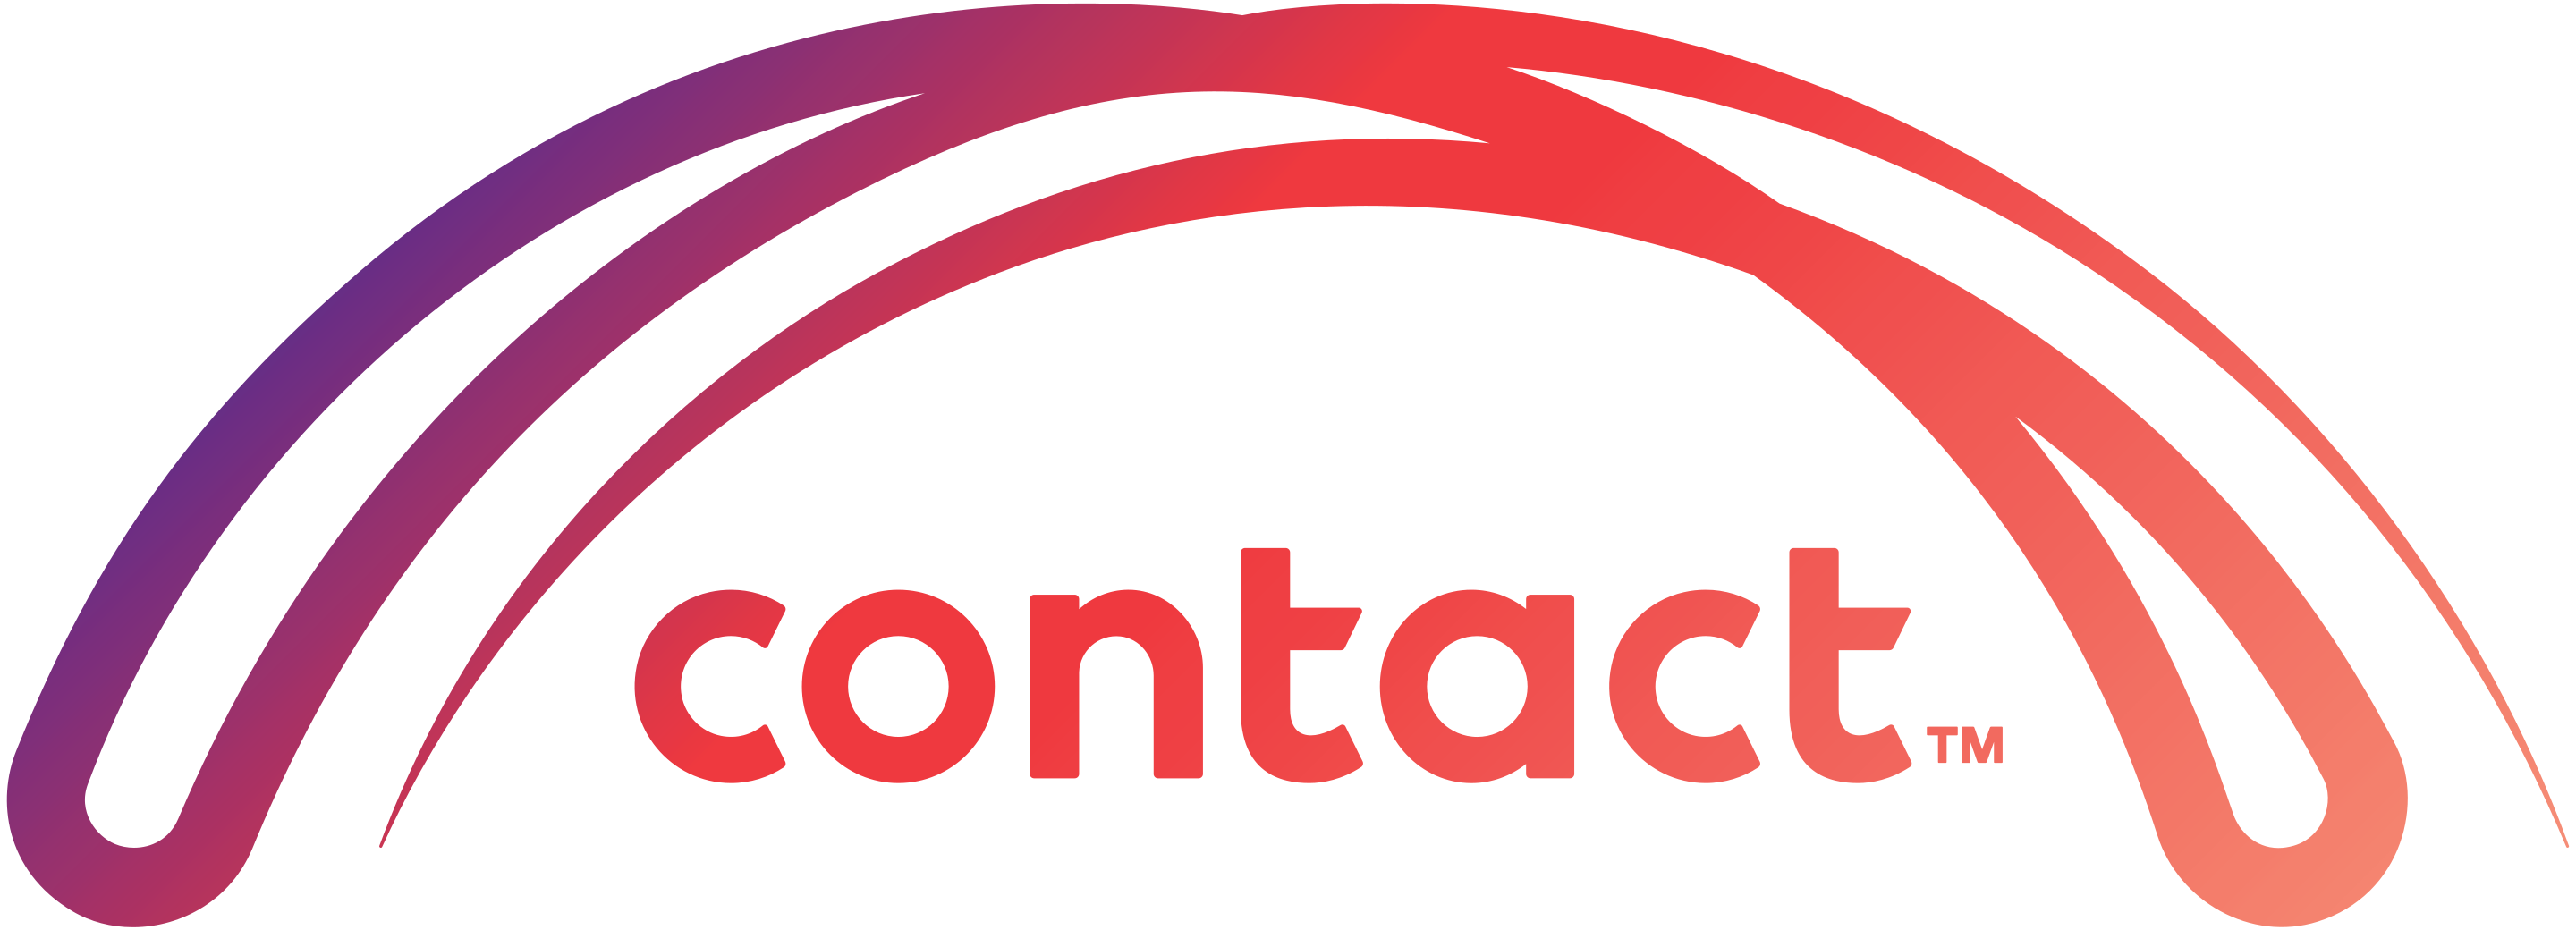 Contact energy logo